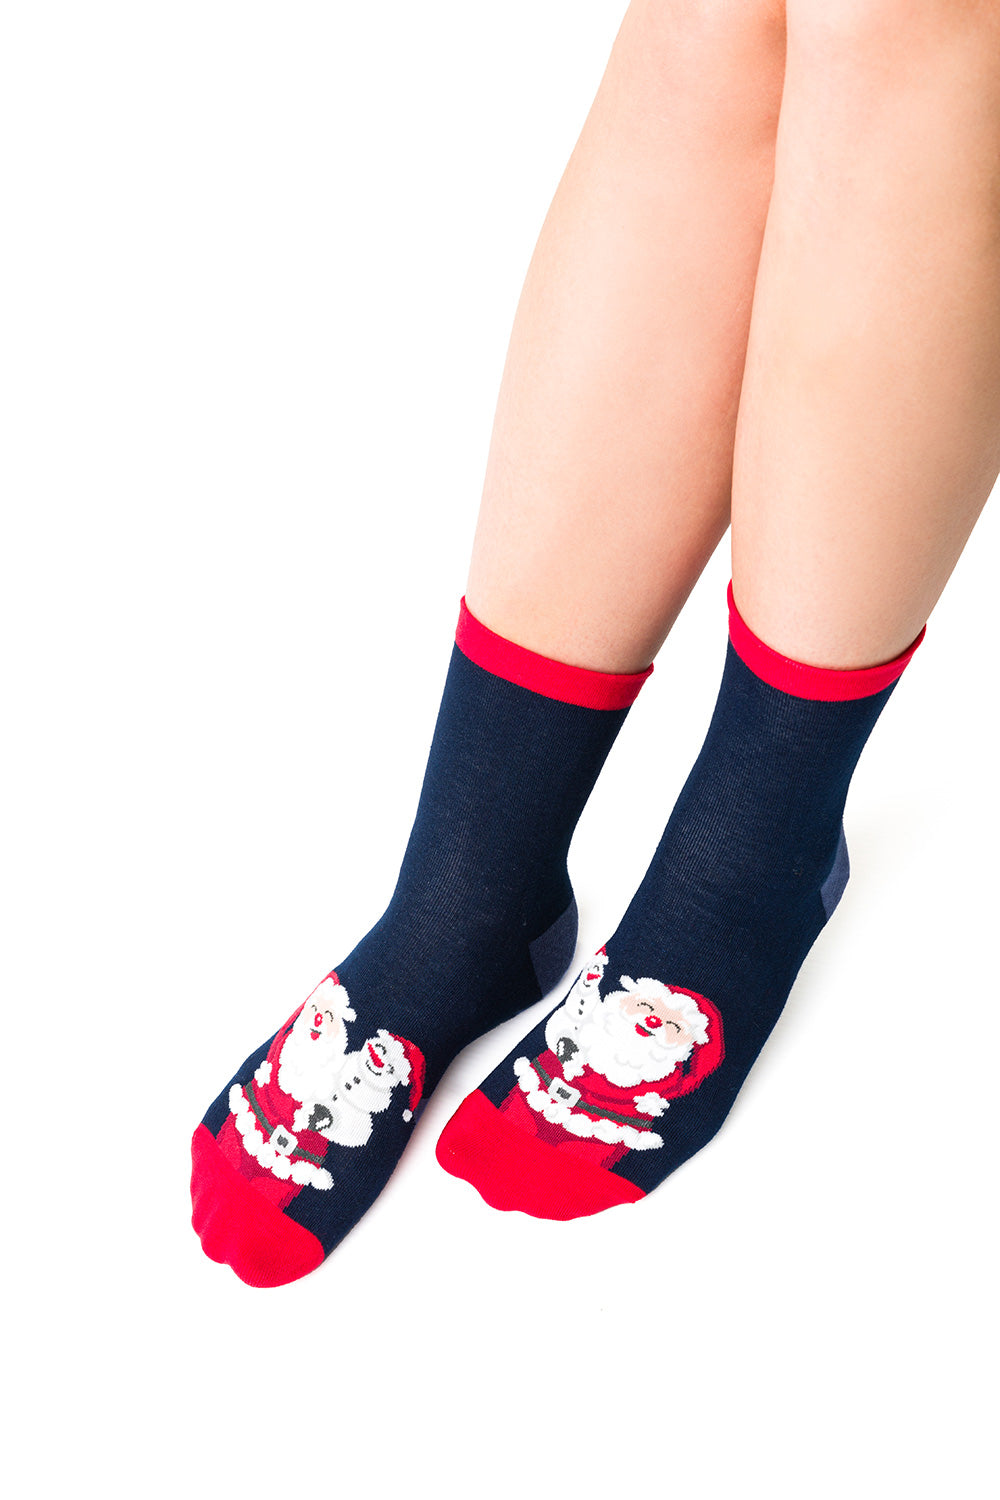 Socks model 173239 Elsy Style Socks